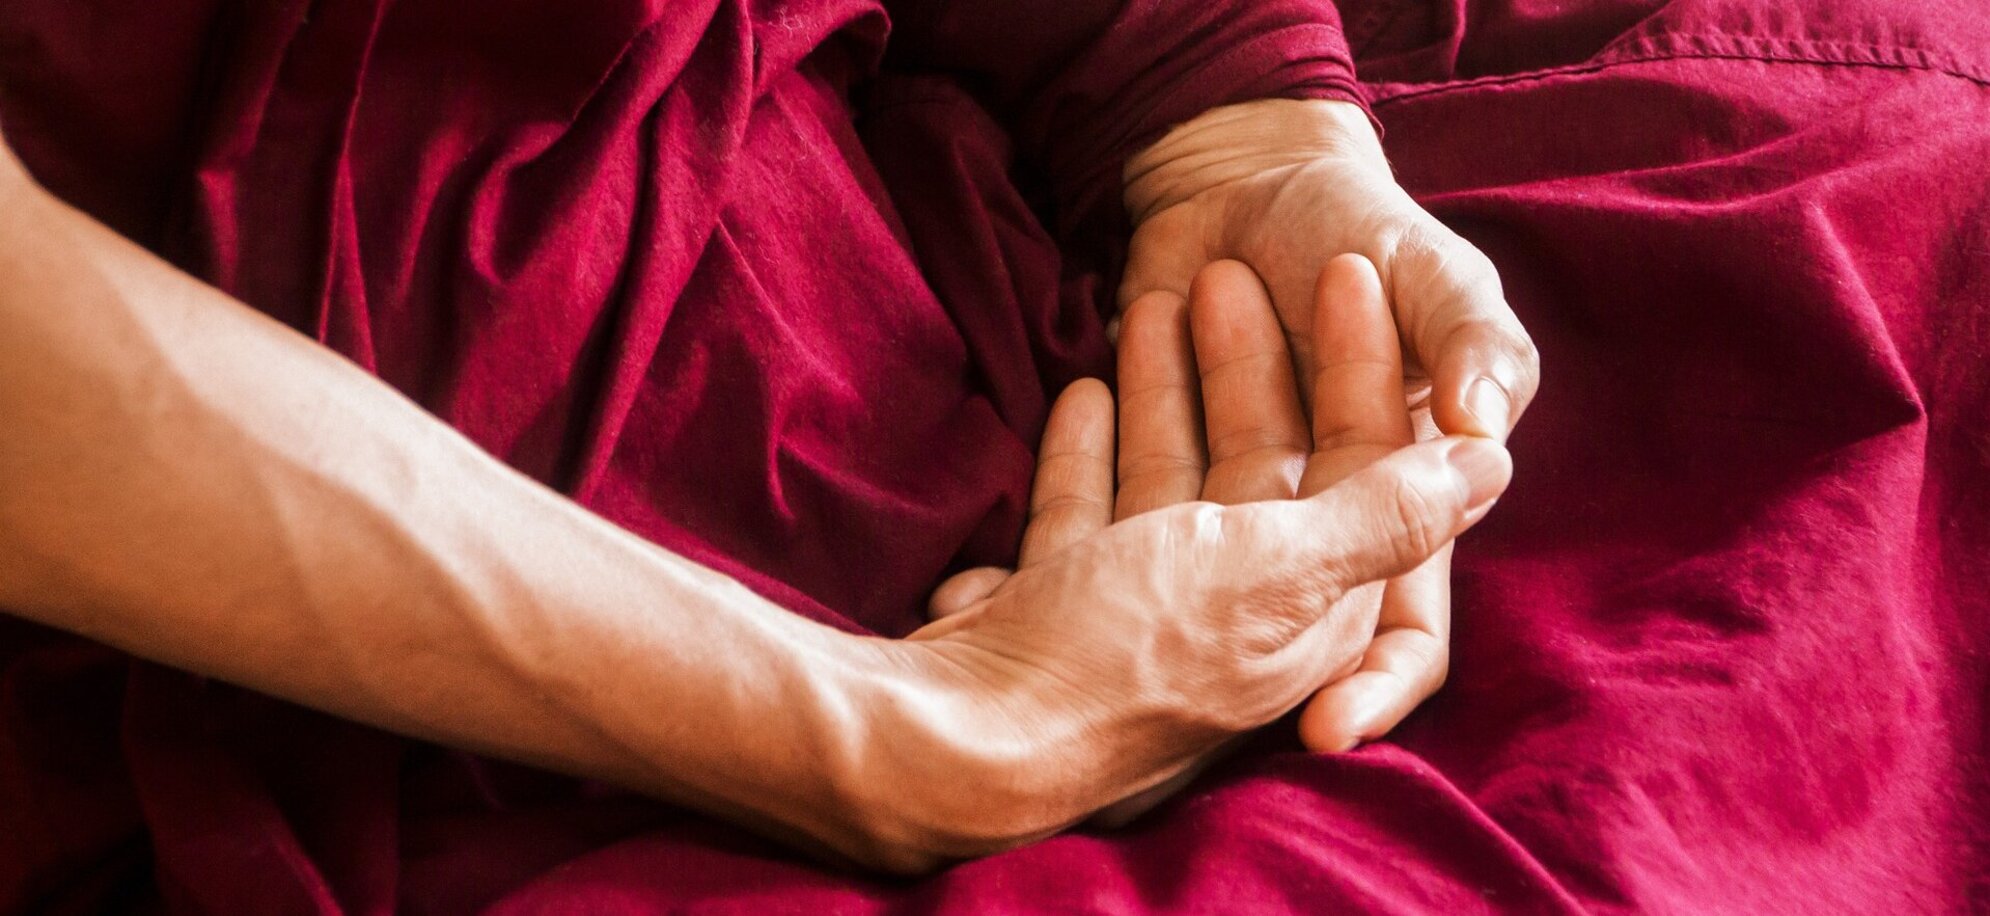 Hands formed in meditation or prayer